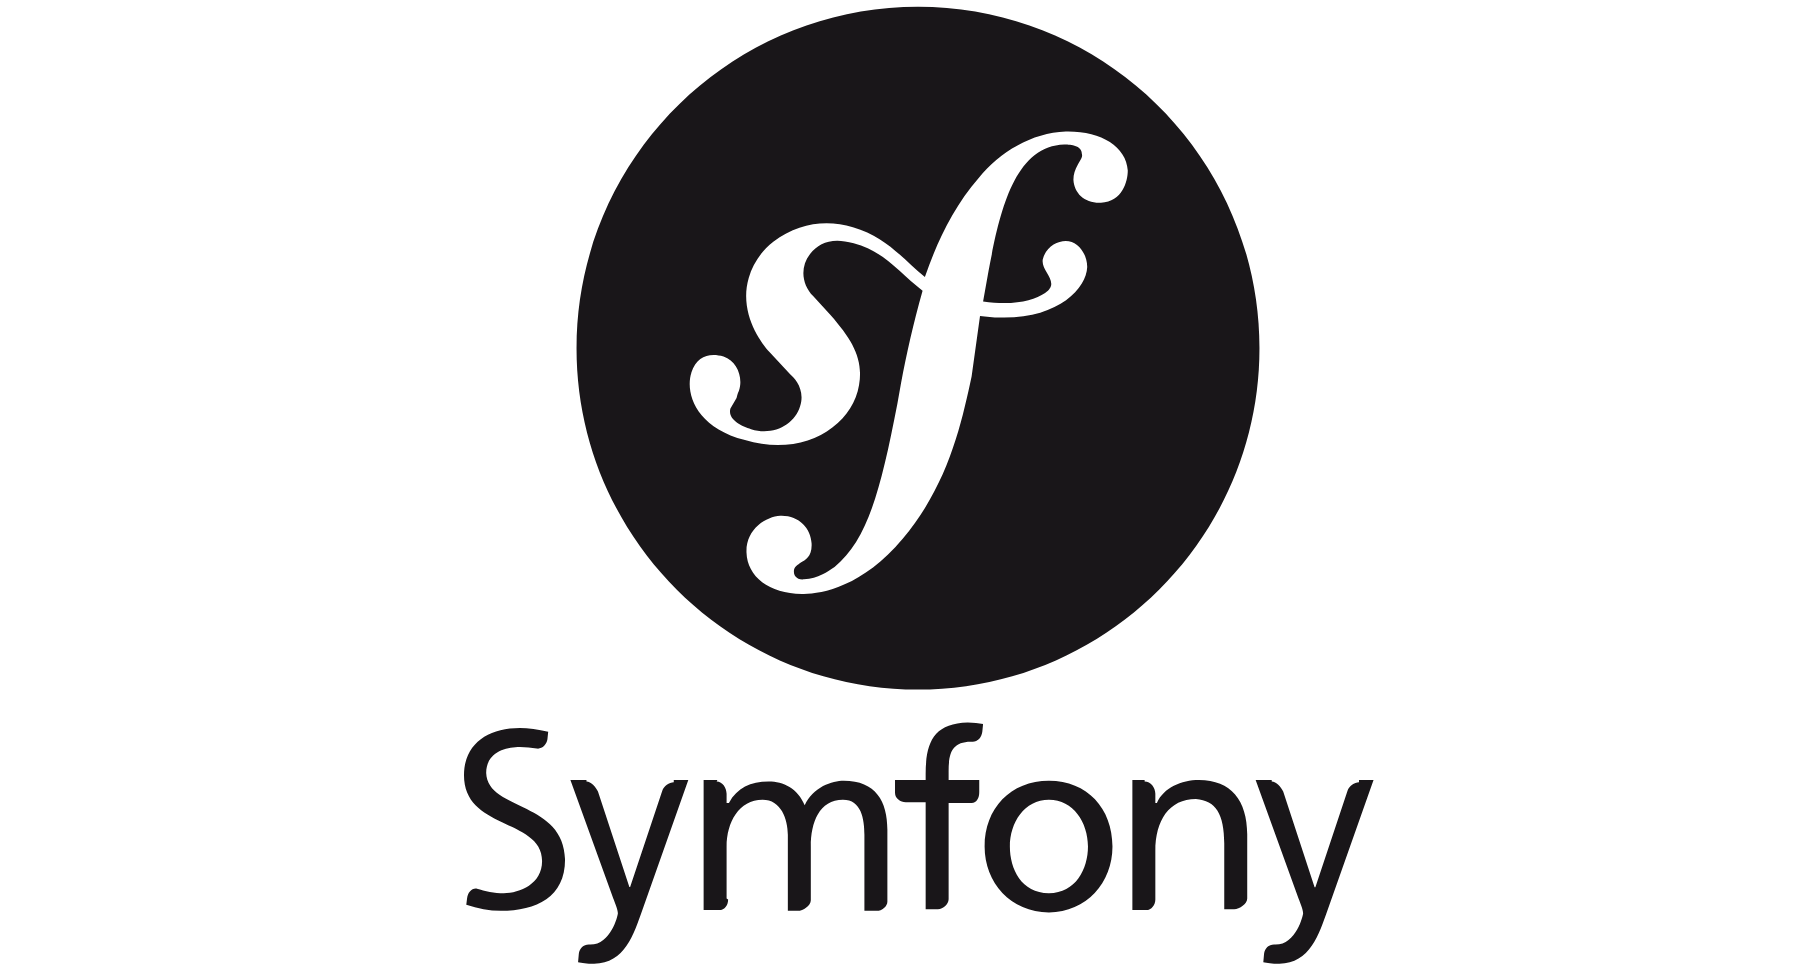 【Symfony】Symfonyで簡単なテストを試してみる...!